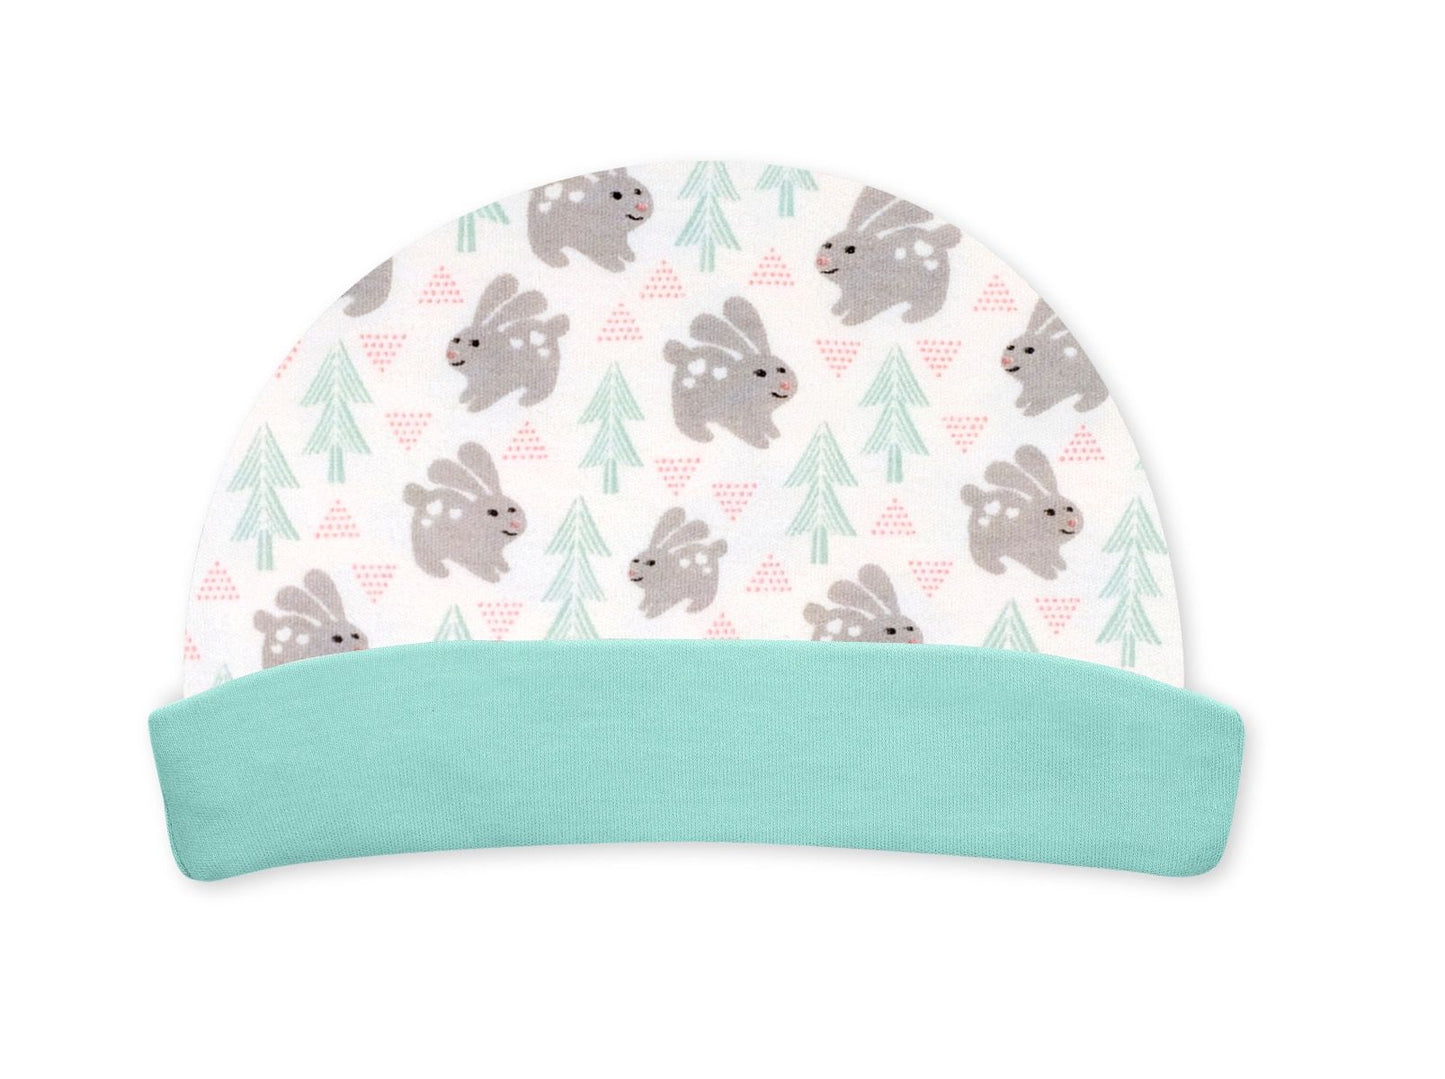 Snow Bunny Gift Basket